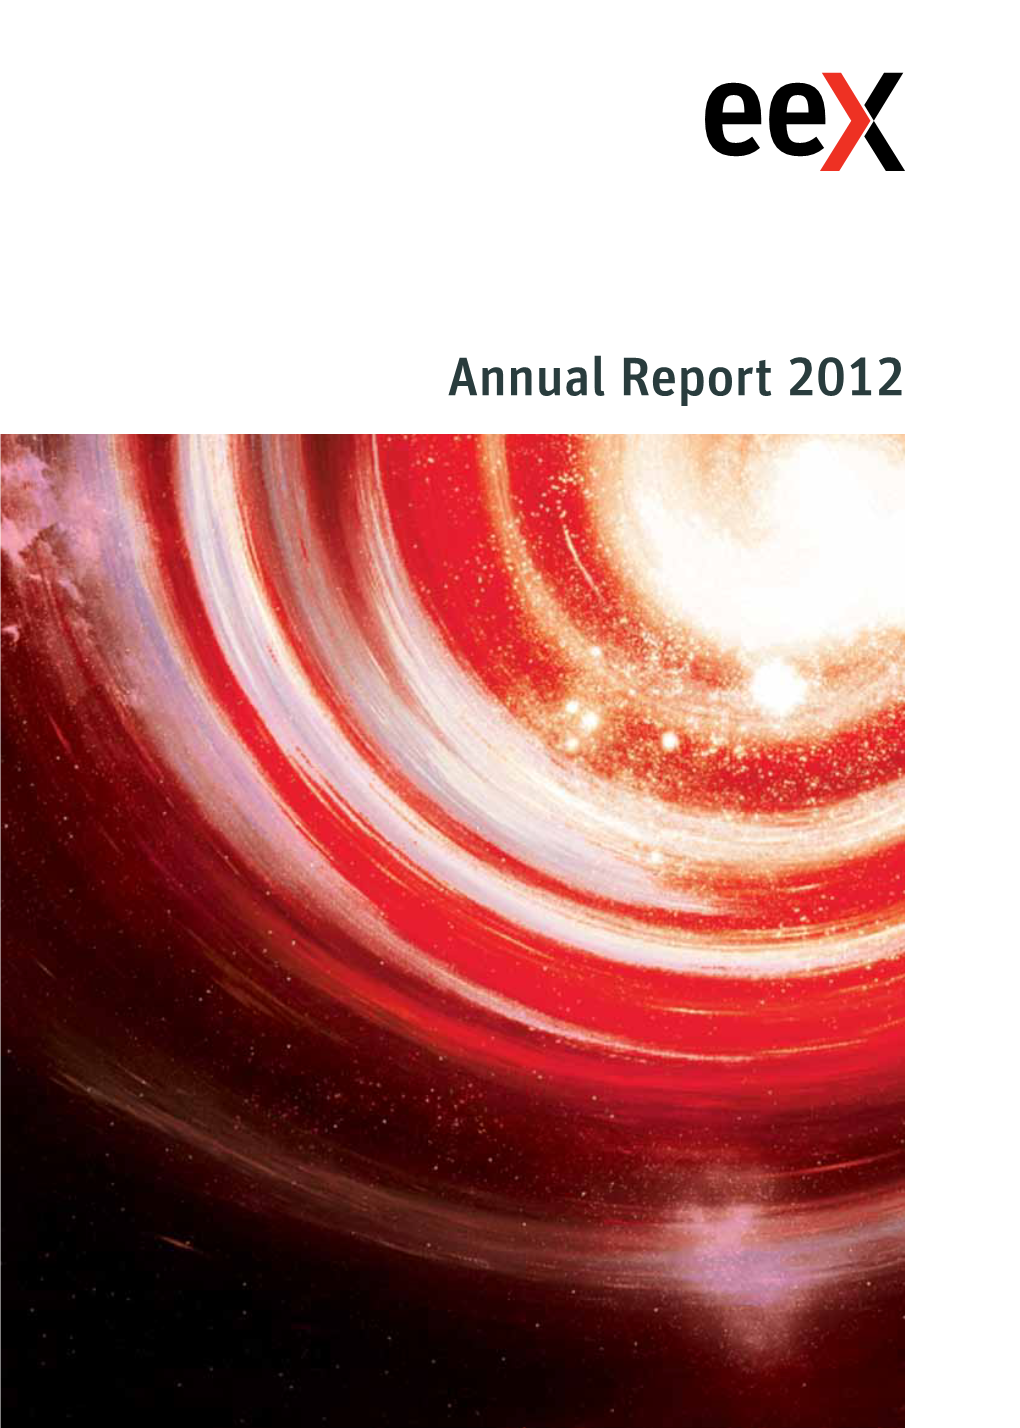 Annual Report 2012 Annual Report 2012Annual Report